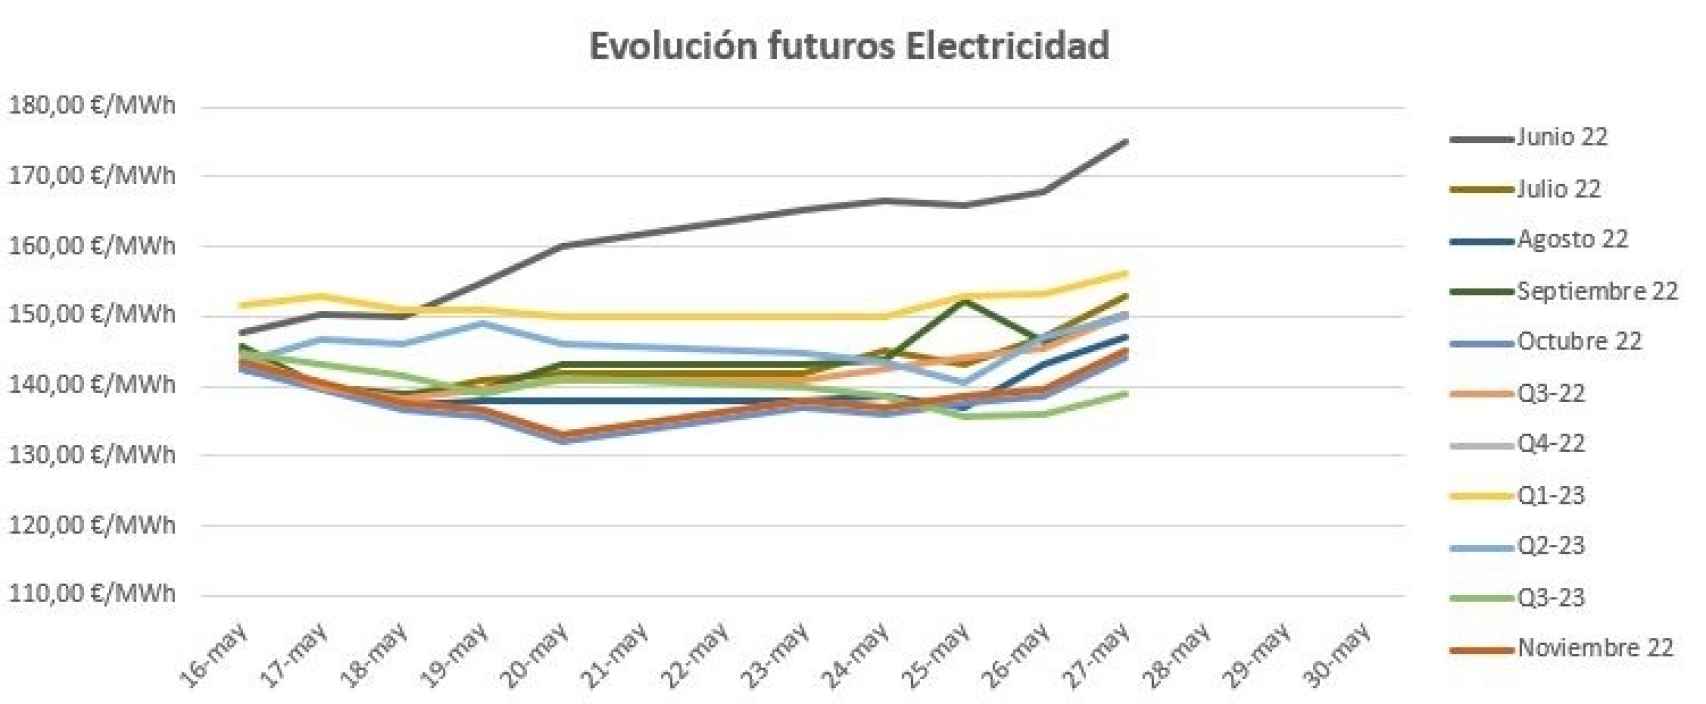 Evolución de los futuros de electricidad en España